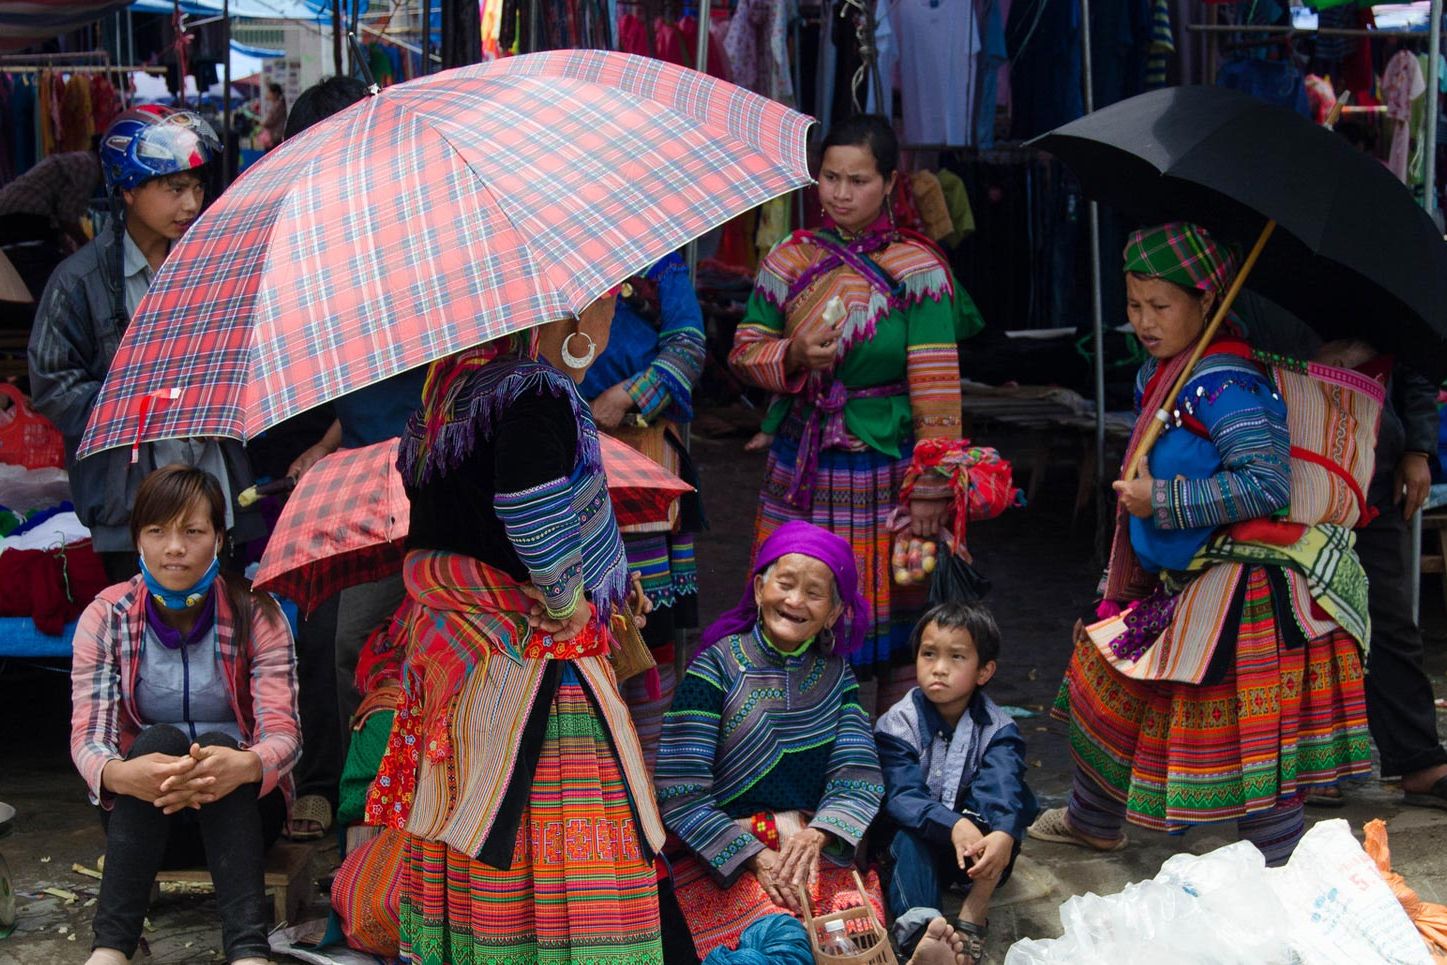 Hmong women at the Bac Ha market